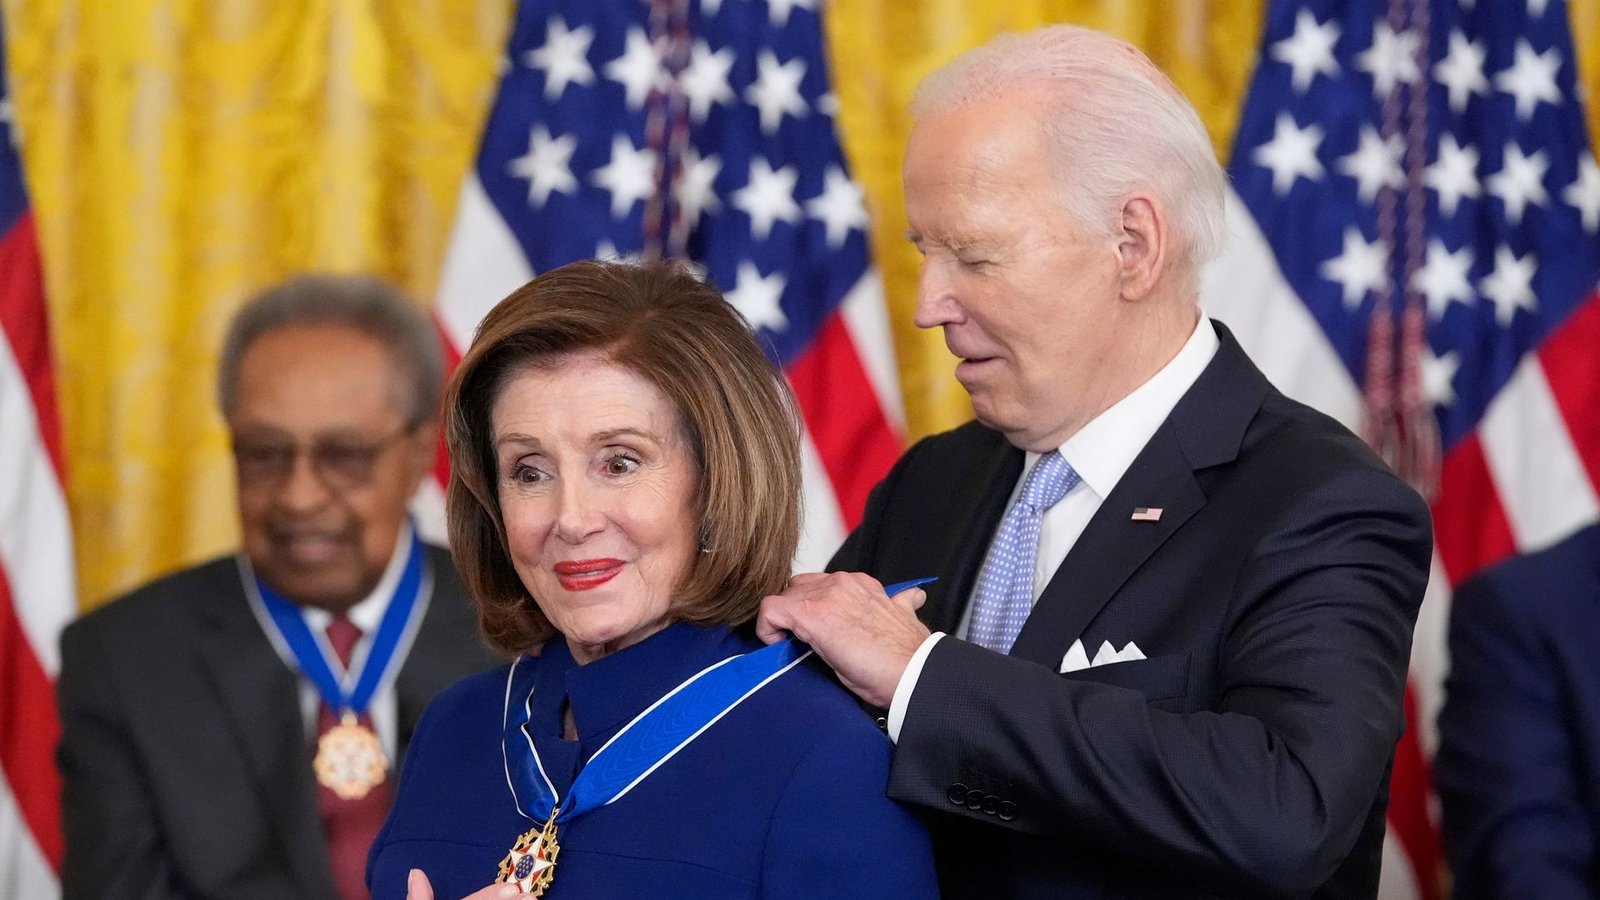 US-Präsident Joe Biden verleiht die Presidential Medal of Freedom an die Abgeordnete Nancy Pelosi.Foto: Alex Brandon/AP/dpa